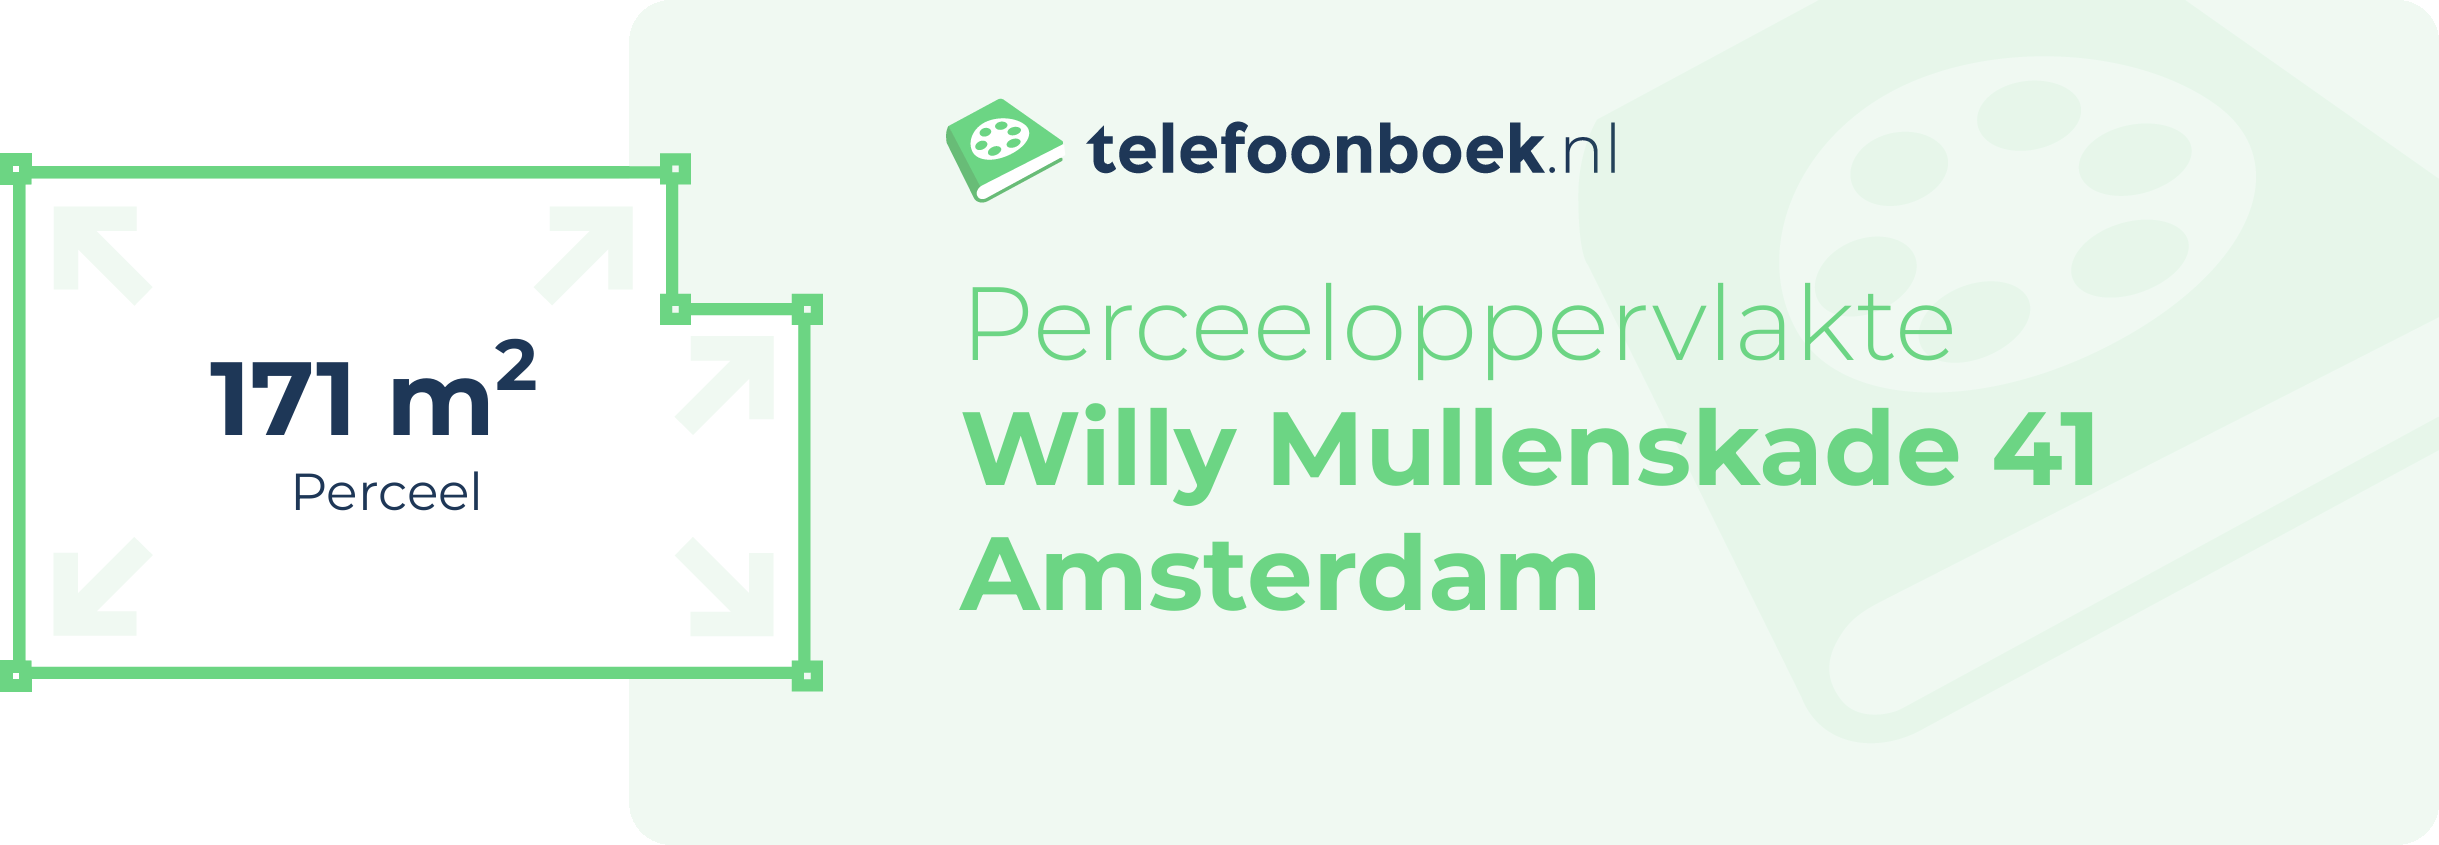 Perceeloppervlakte Willy Mullenskade 41 Amsterdam